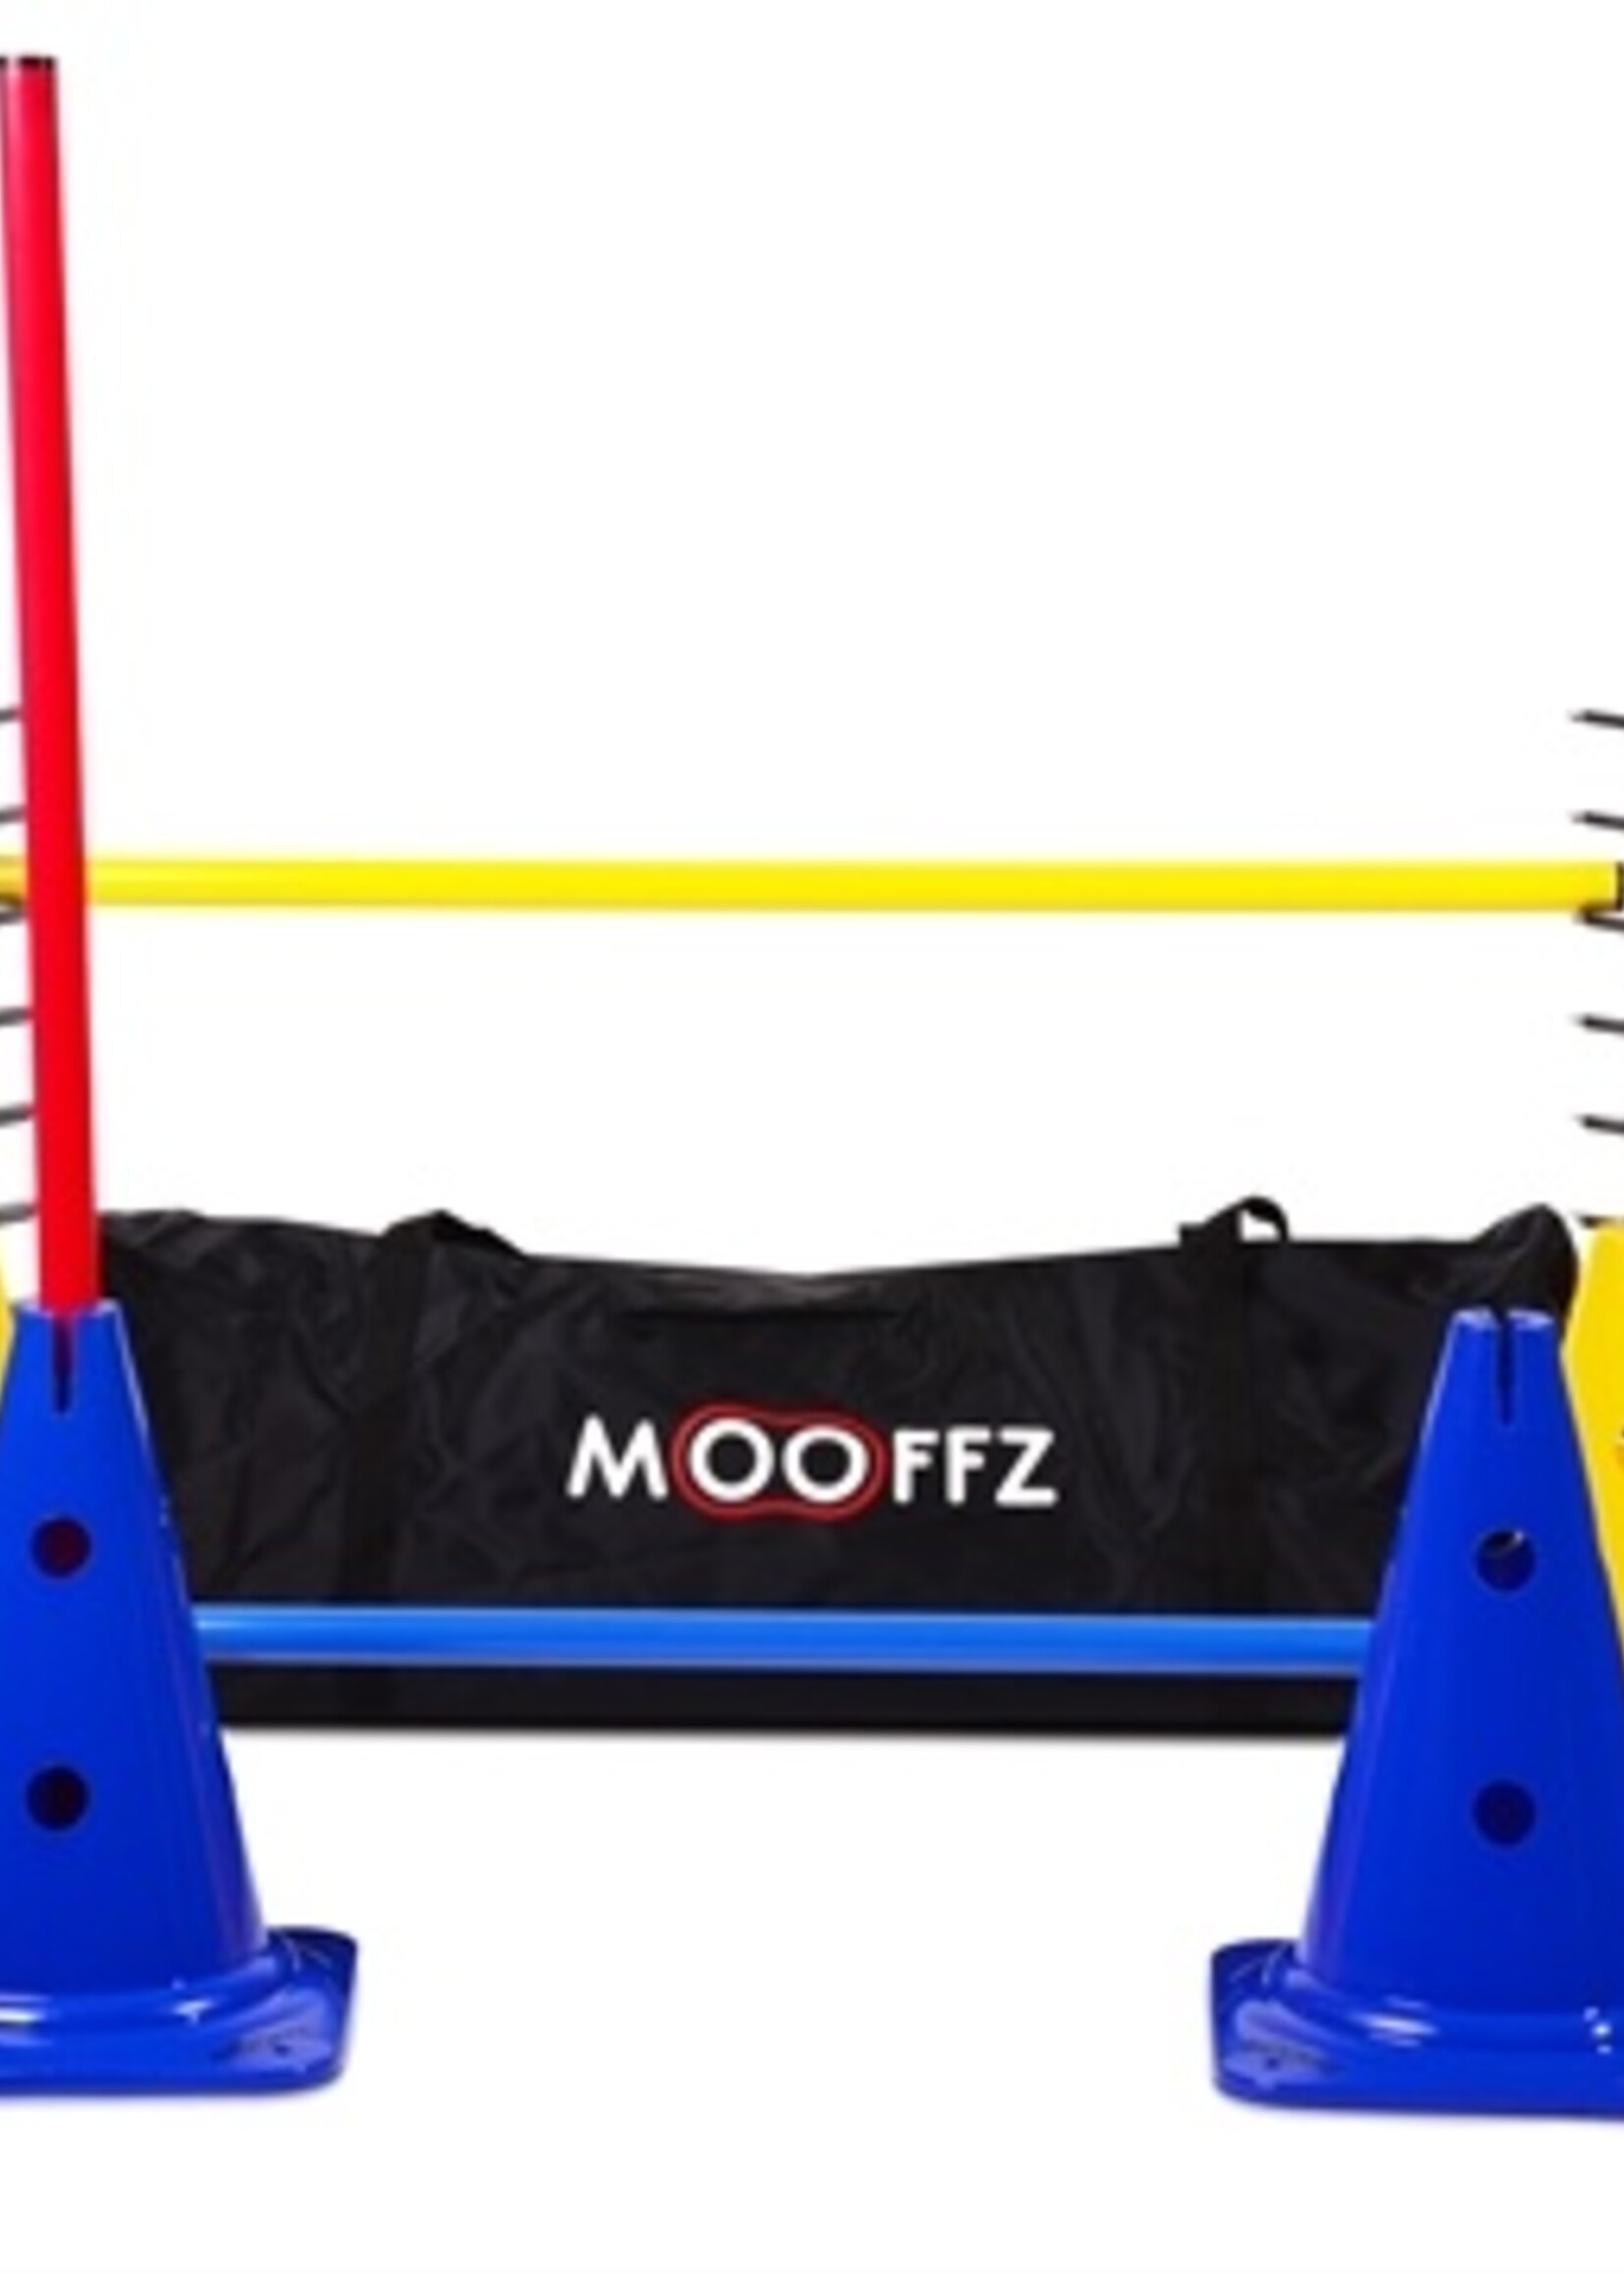 Mooffz Mooffz jump en fun set